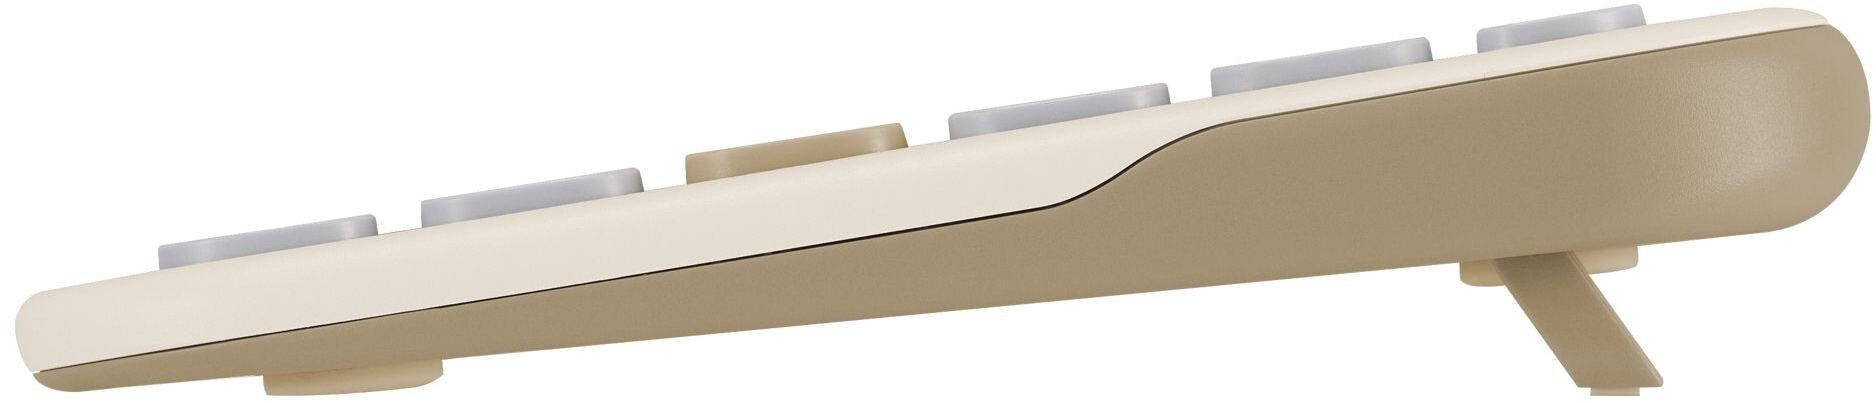 ASUS Marshmallow to kompaktowe klawiatury w pastelowych barwach